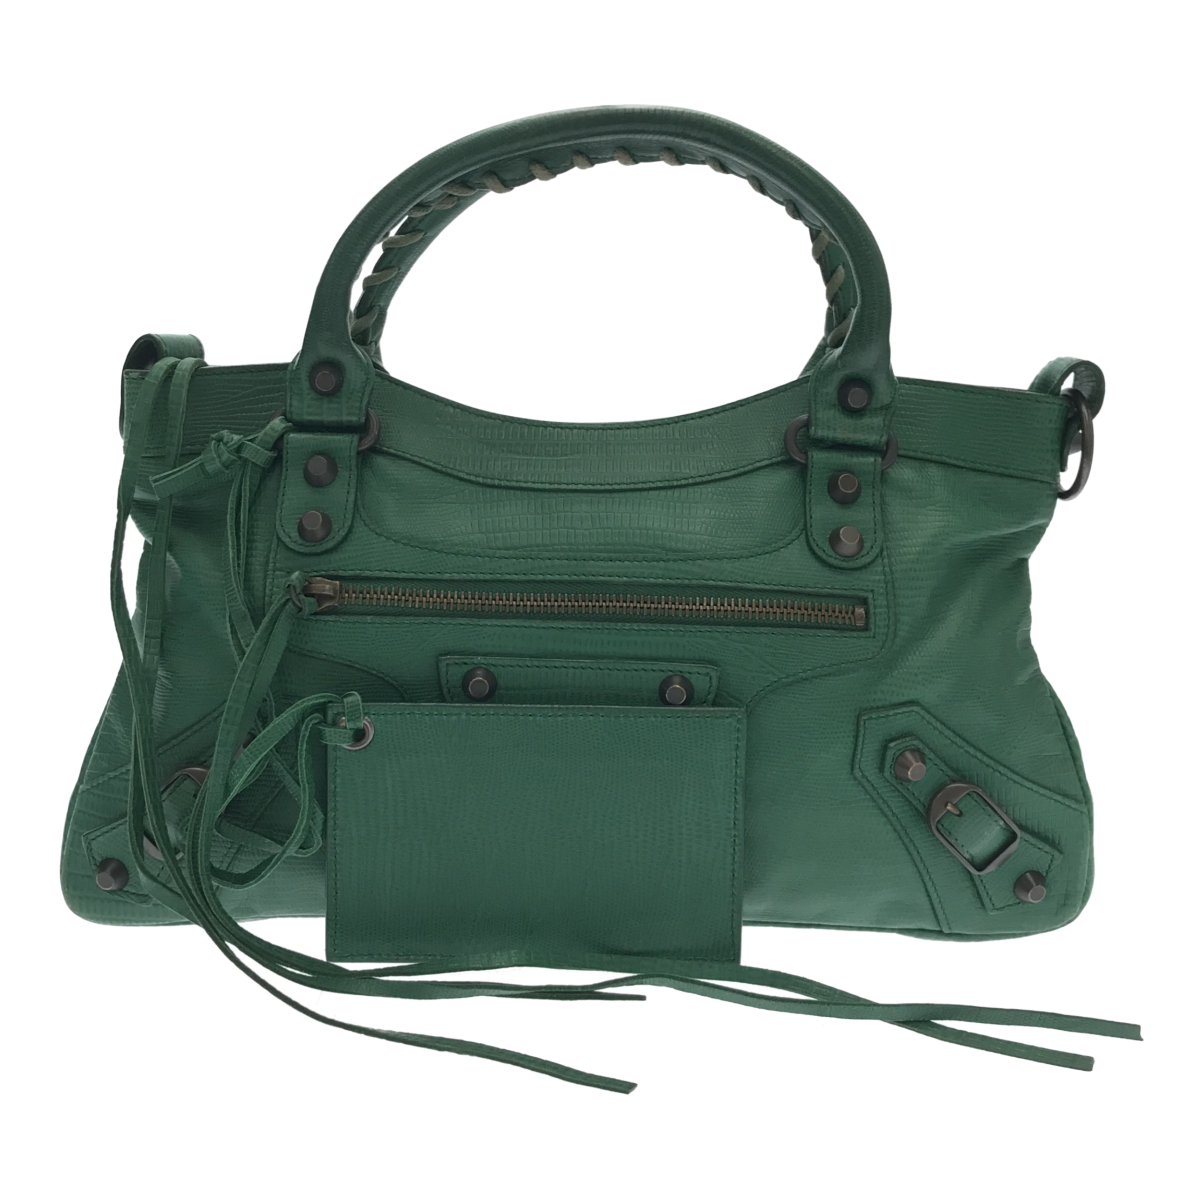 ◆中古品◆バレンシアガ BALENCIAGA ハンドバッグ グリーン かばん カバン 鞄 V56164NSD